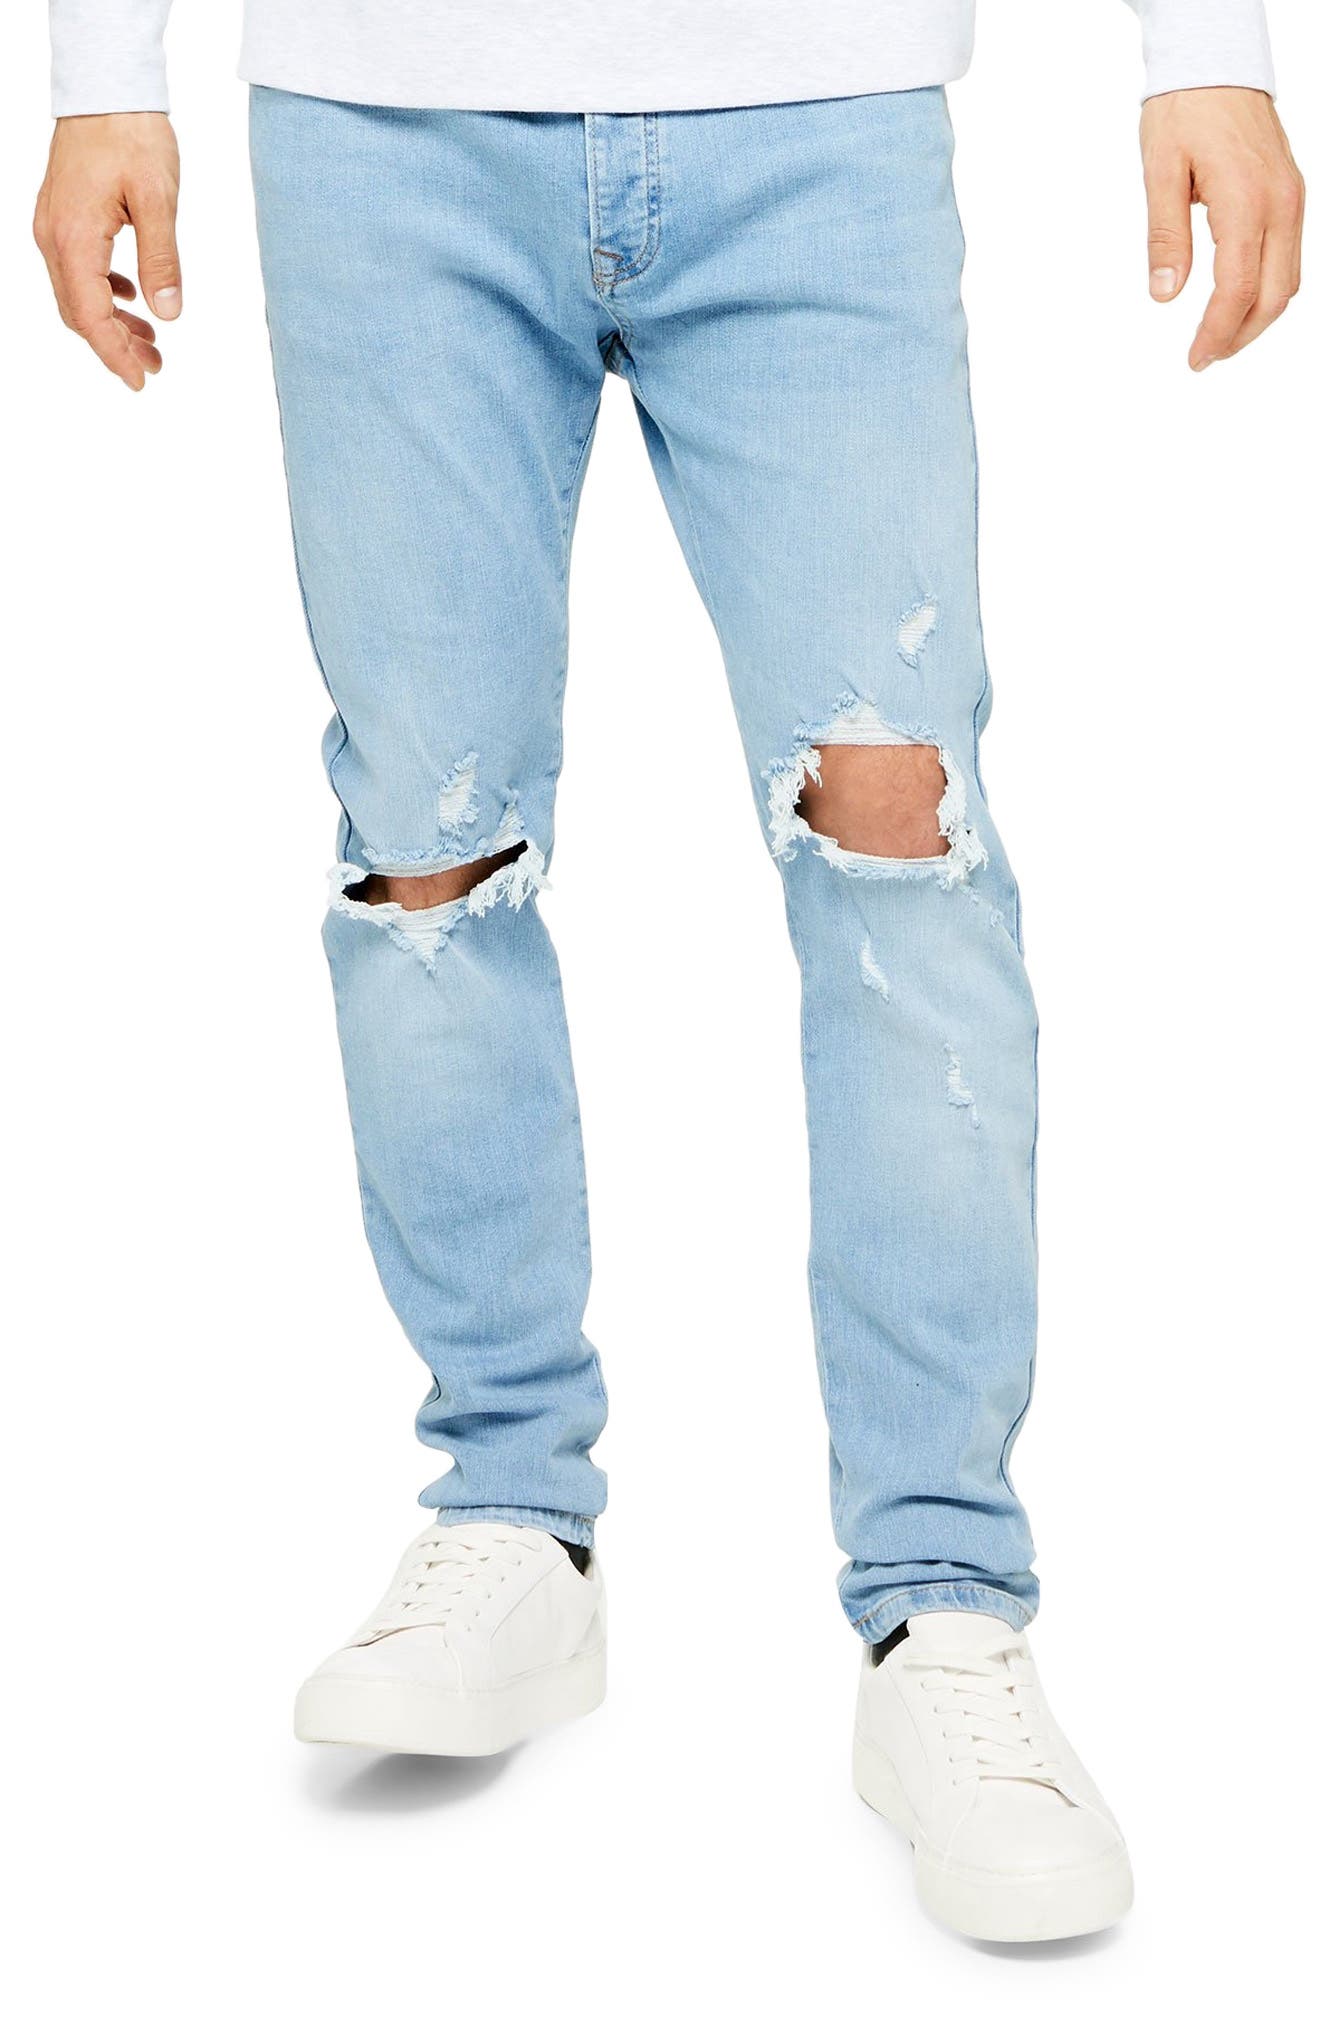 topman jeans sale